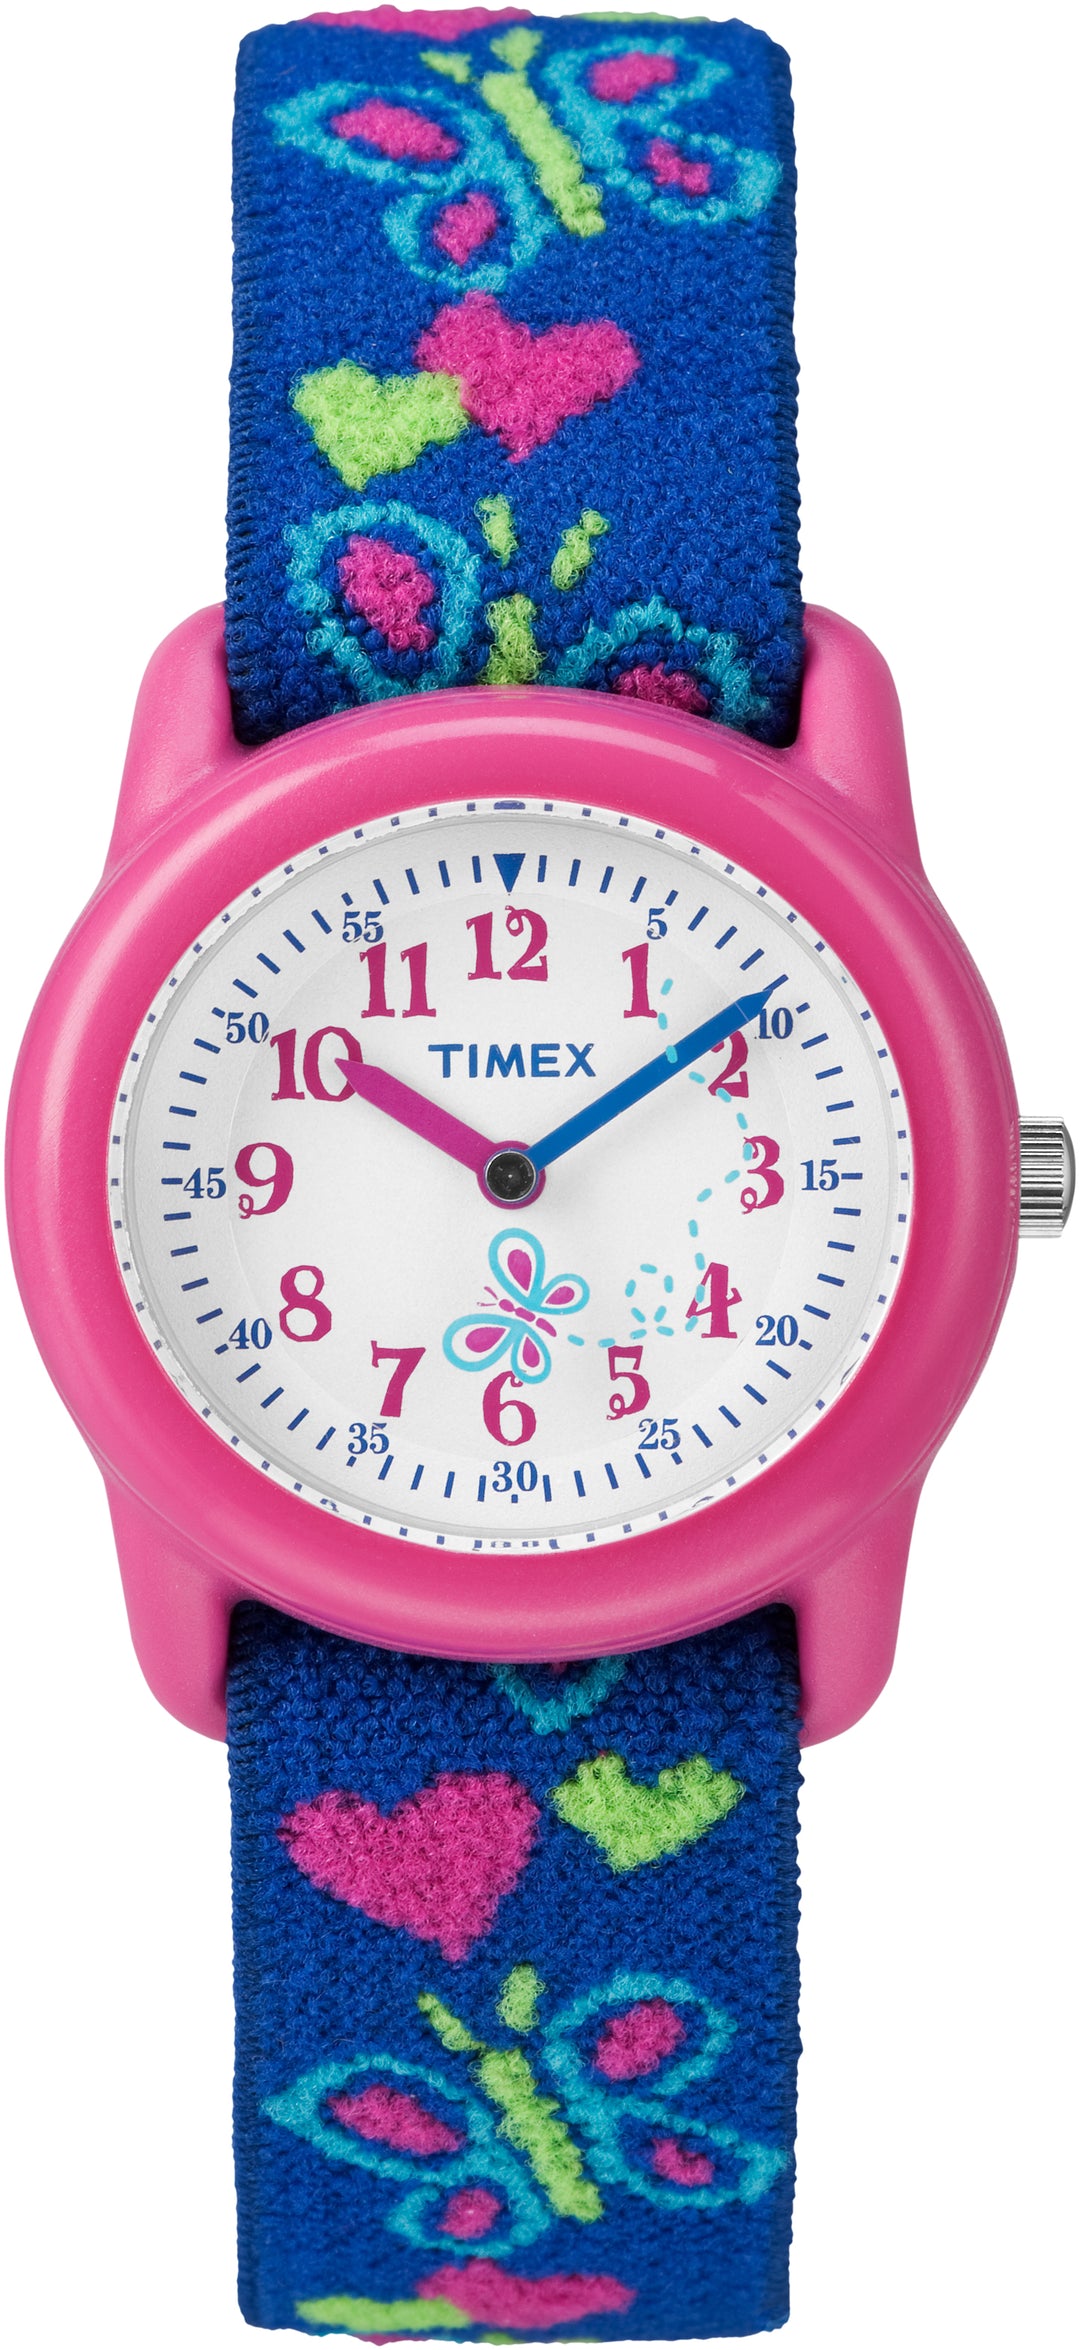 Timex Time Teacher Childrens Watch